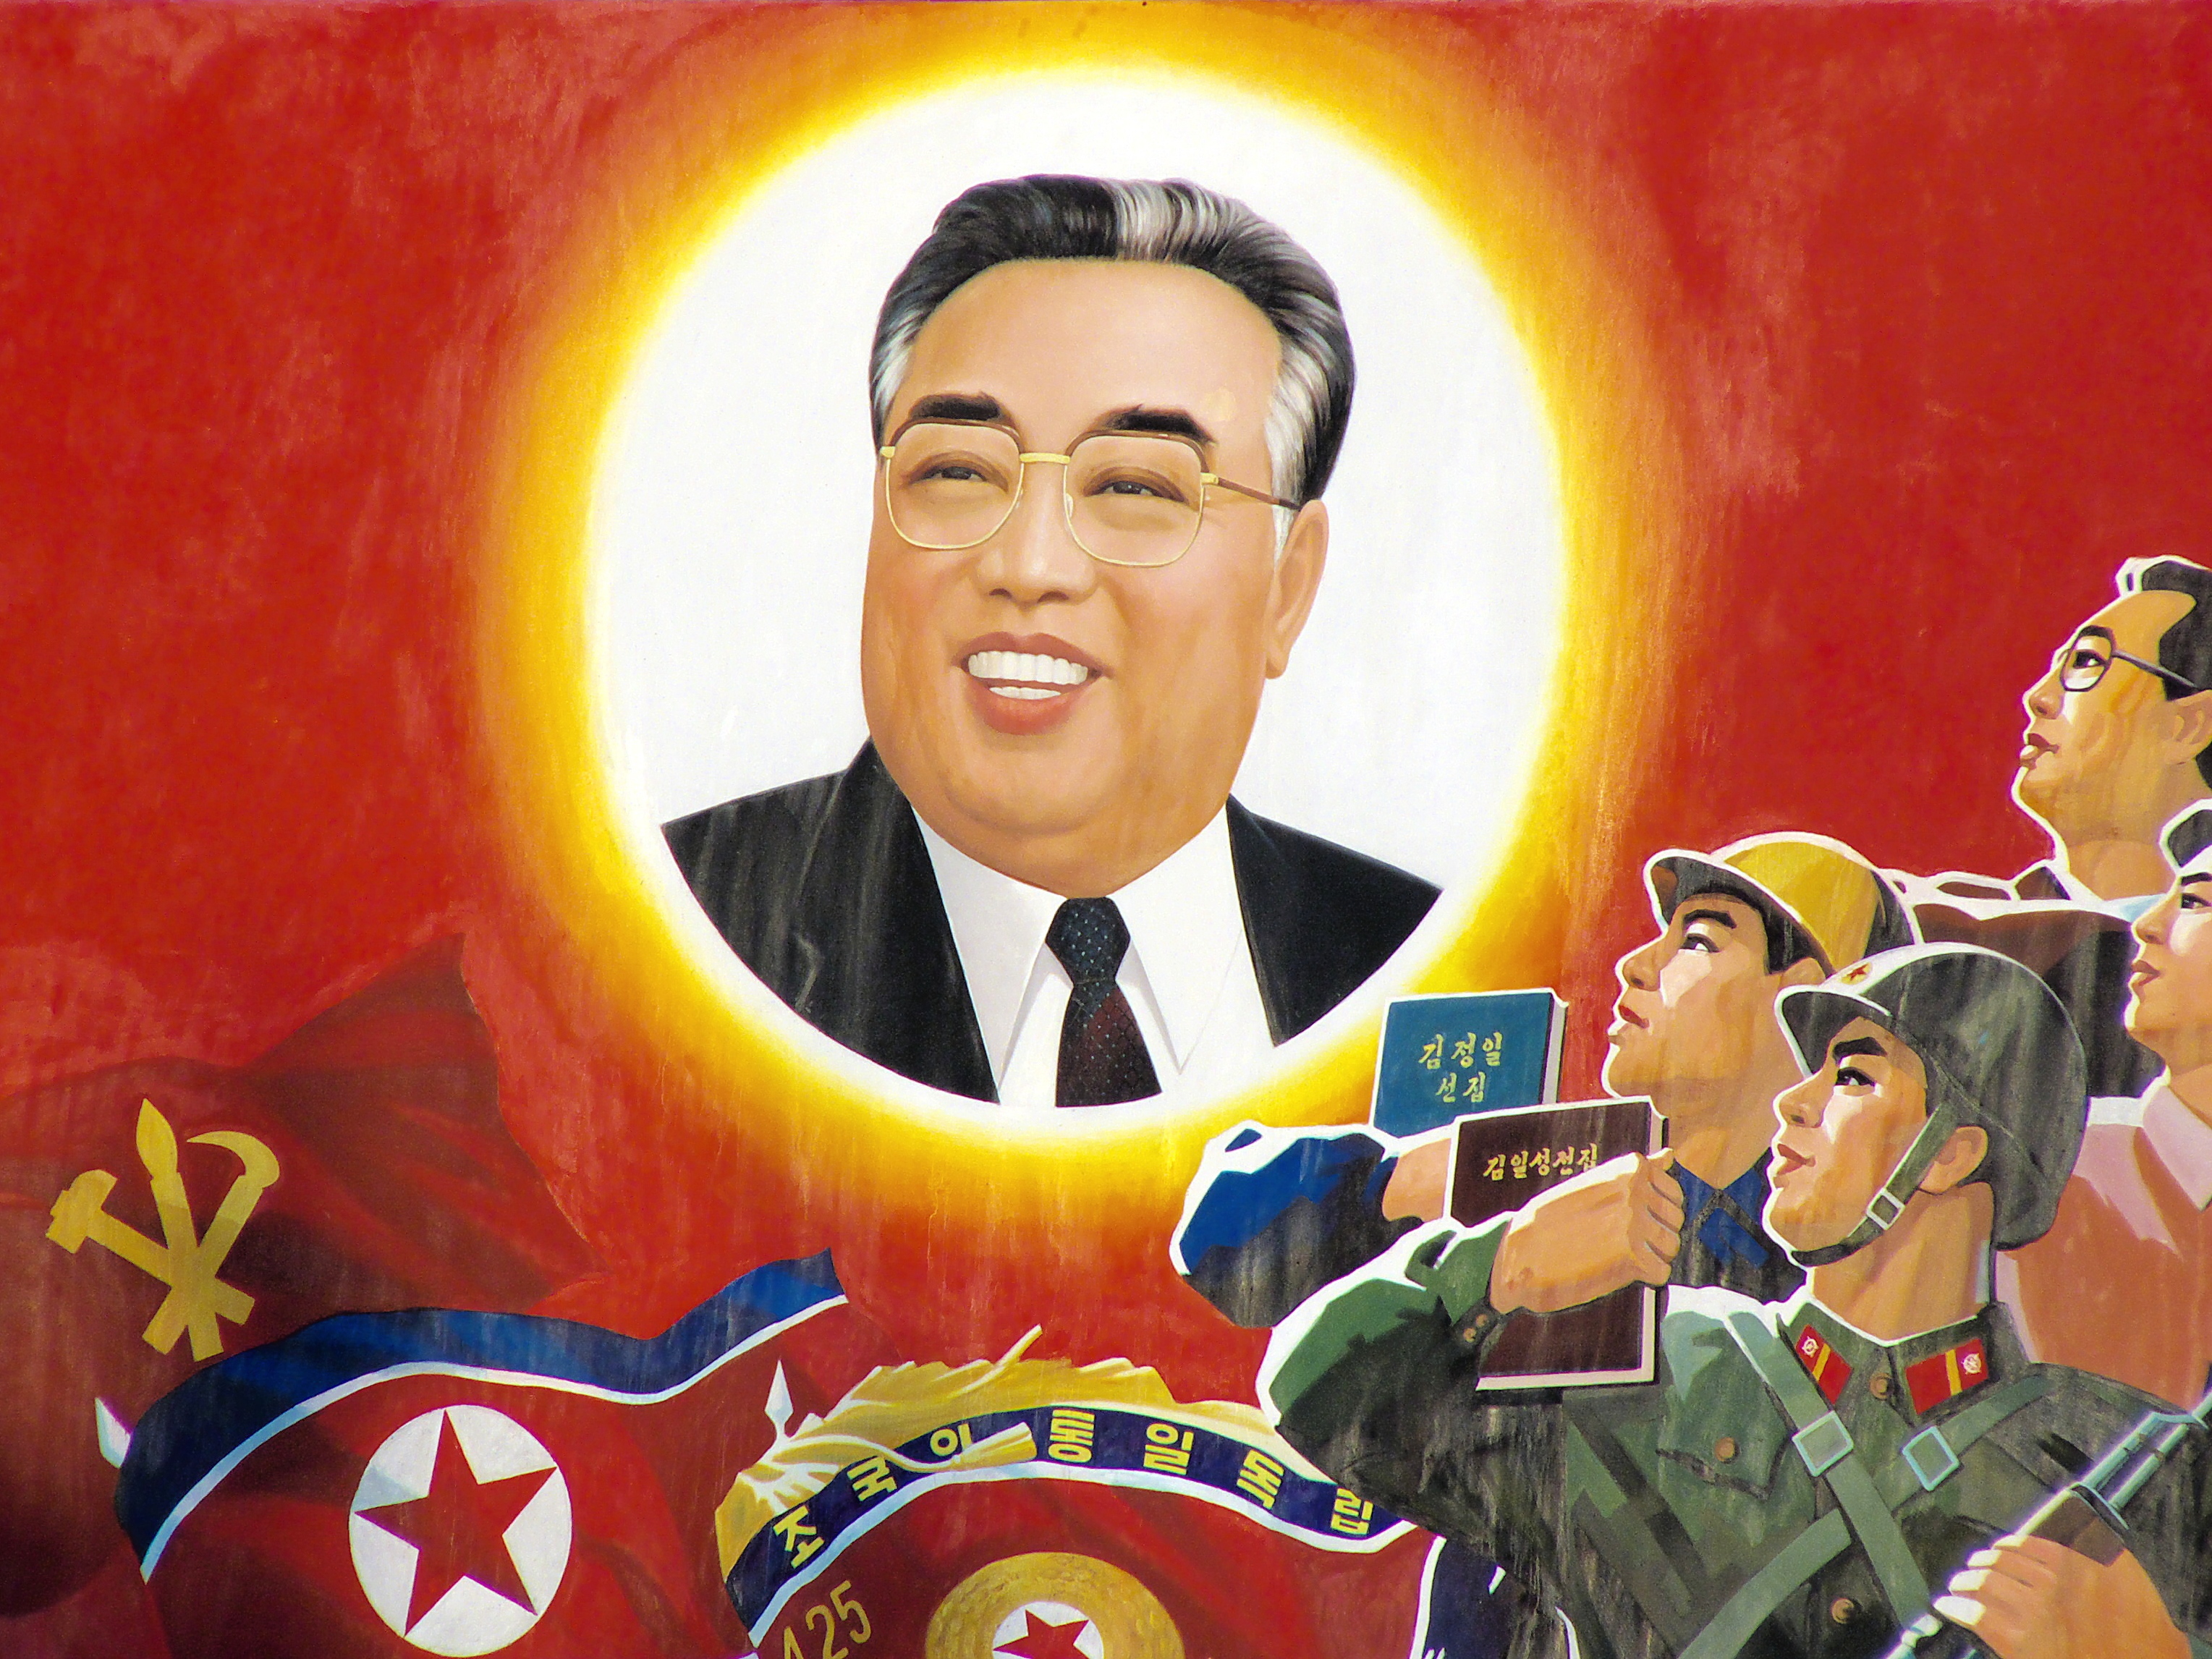 Ohýbání reality: filmový dokument V paprscích slunce poodhaluje práci severokorejské propagandy